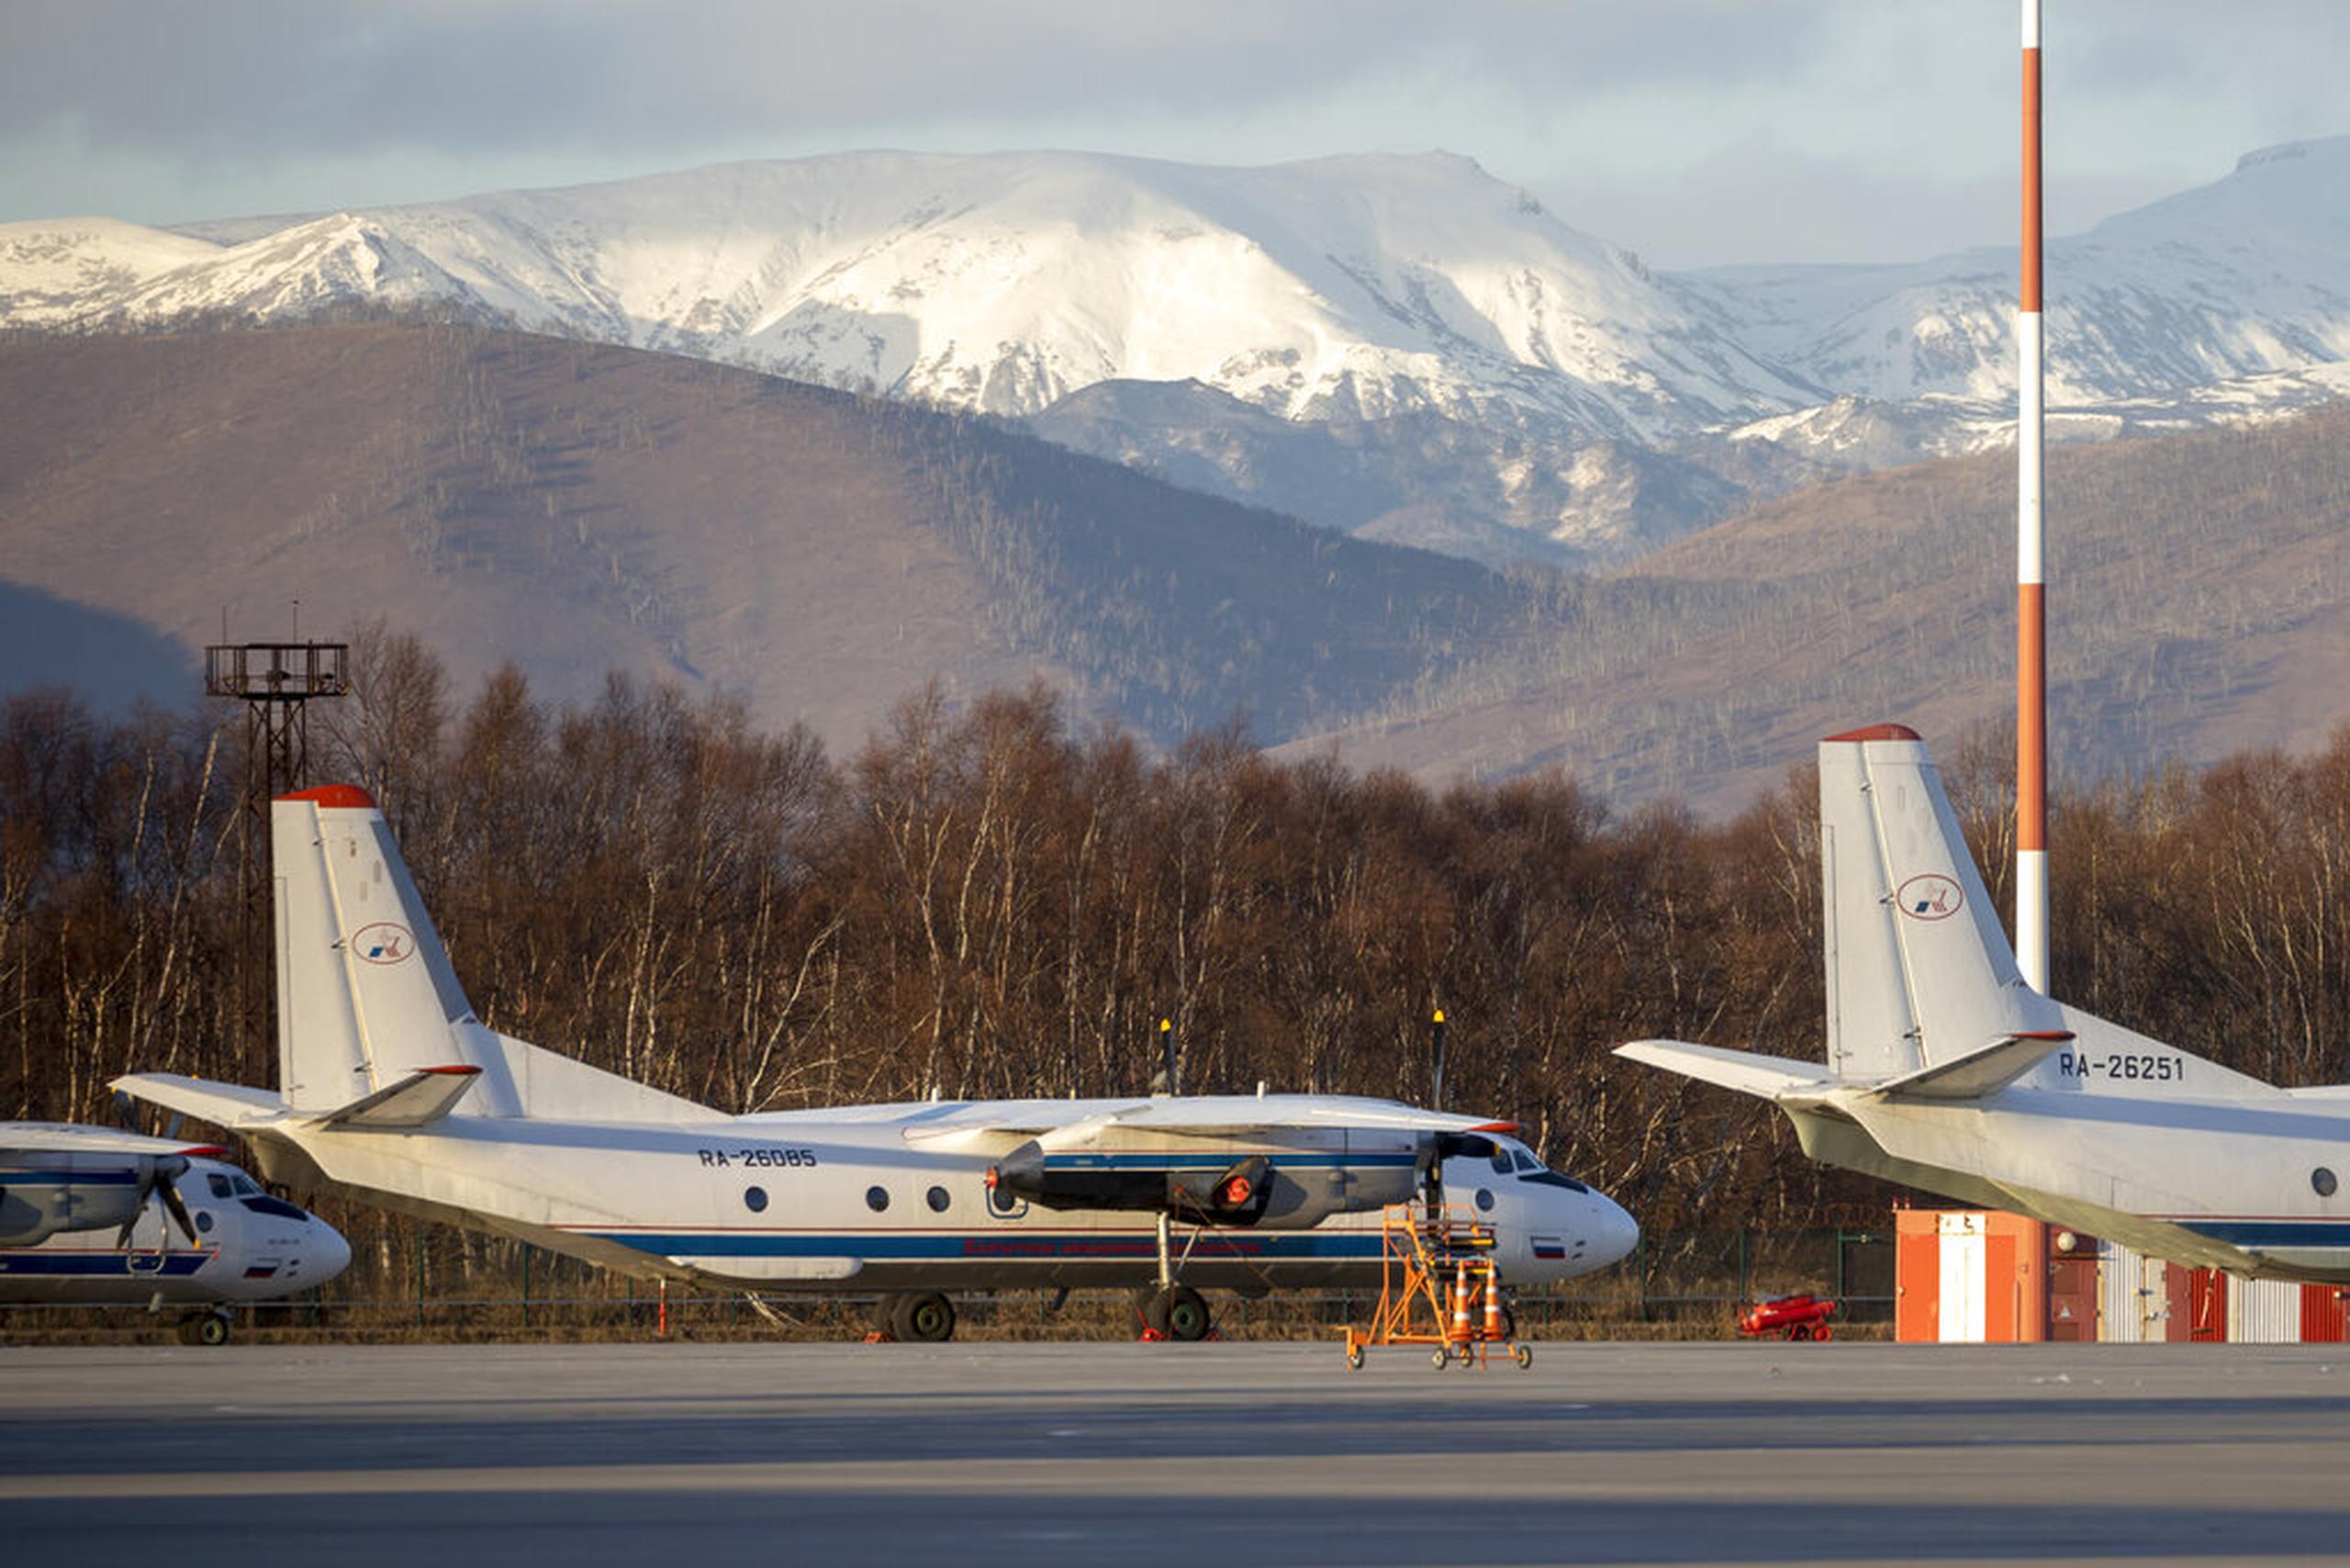 El avión An-28 realiza vuelos cortos, y lo usan pequeñas aerolíneas rusas y de otros países.